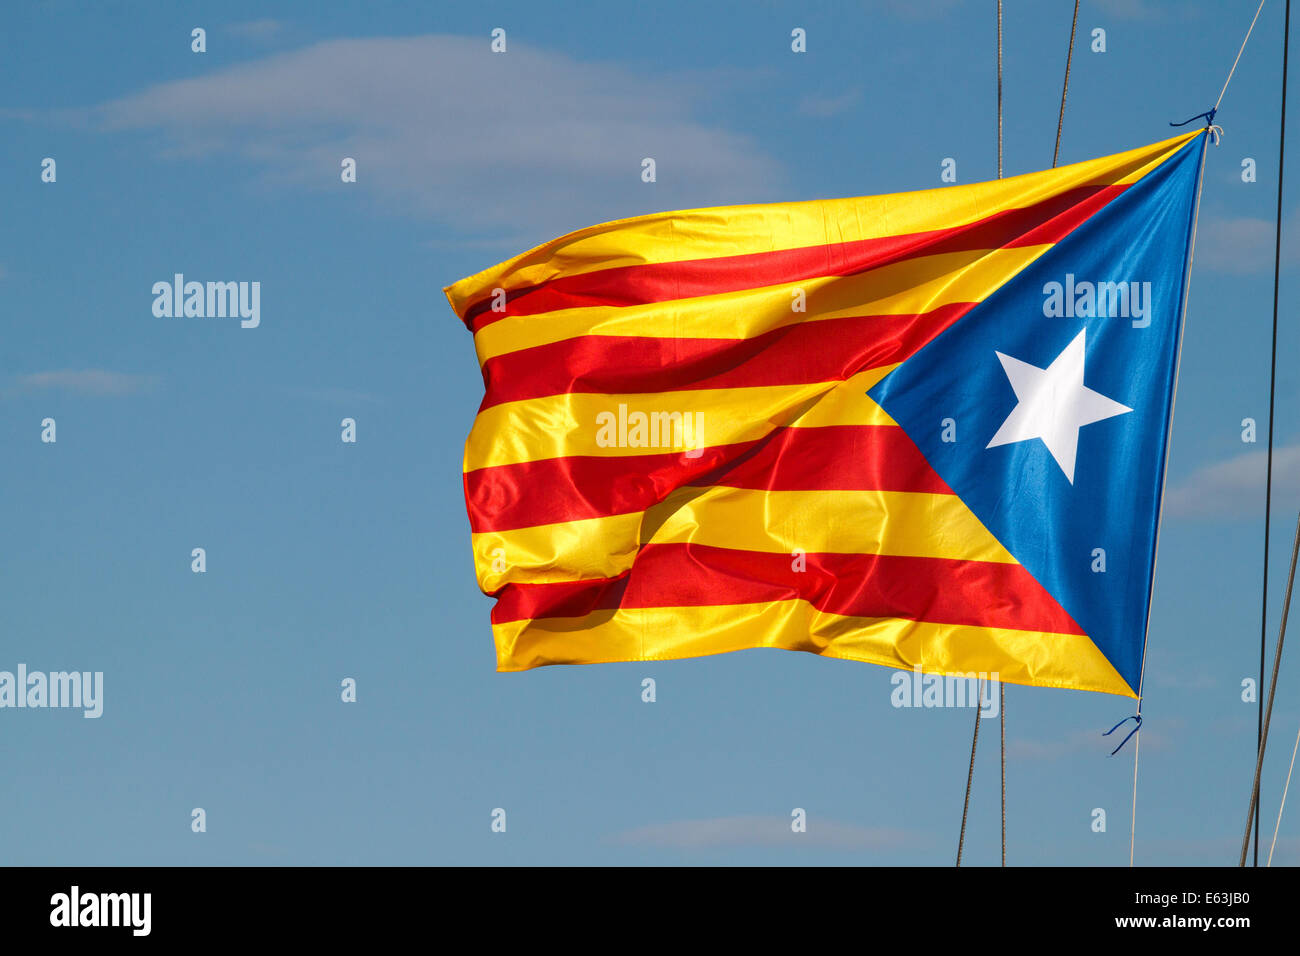 Estelada Flagge gilt die Flagge, die die Unabhängigkeit der Paisos Katalanen symbolisiert Stockfoto